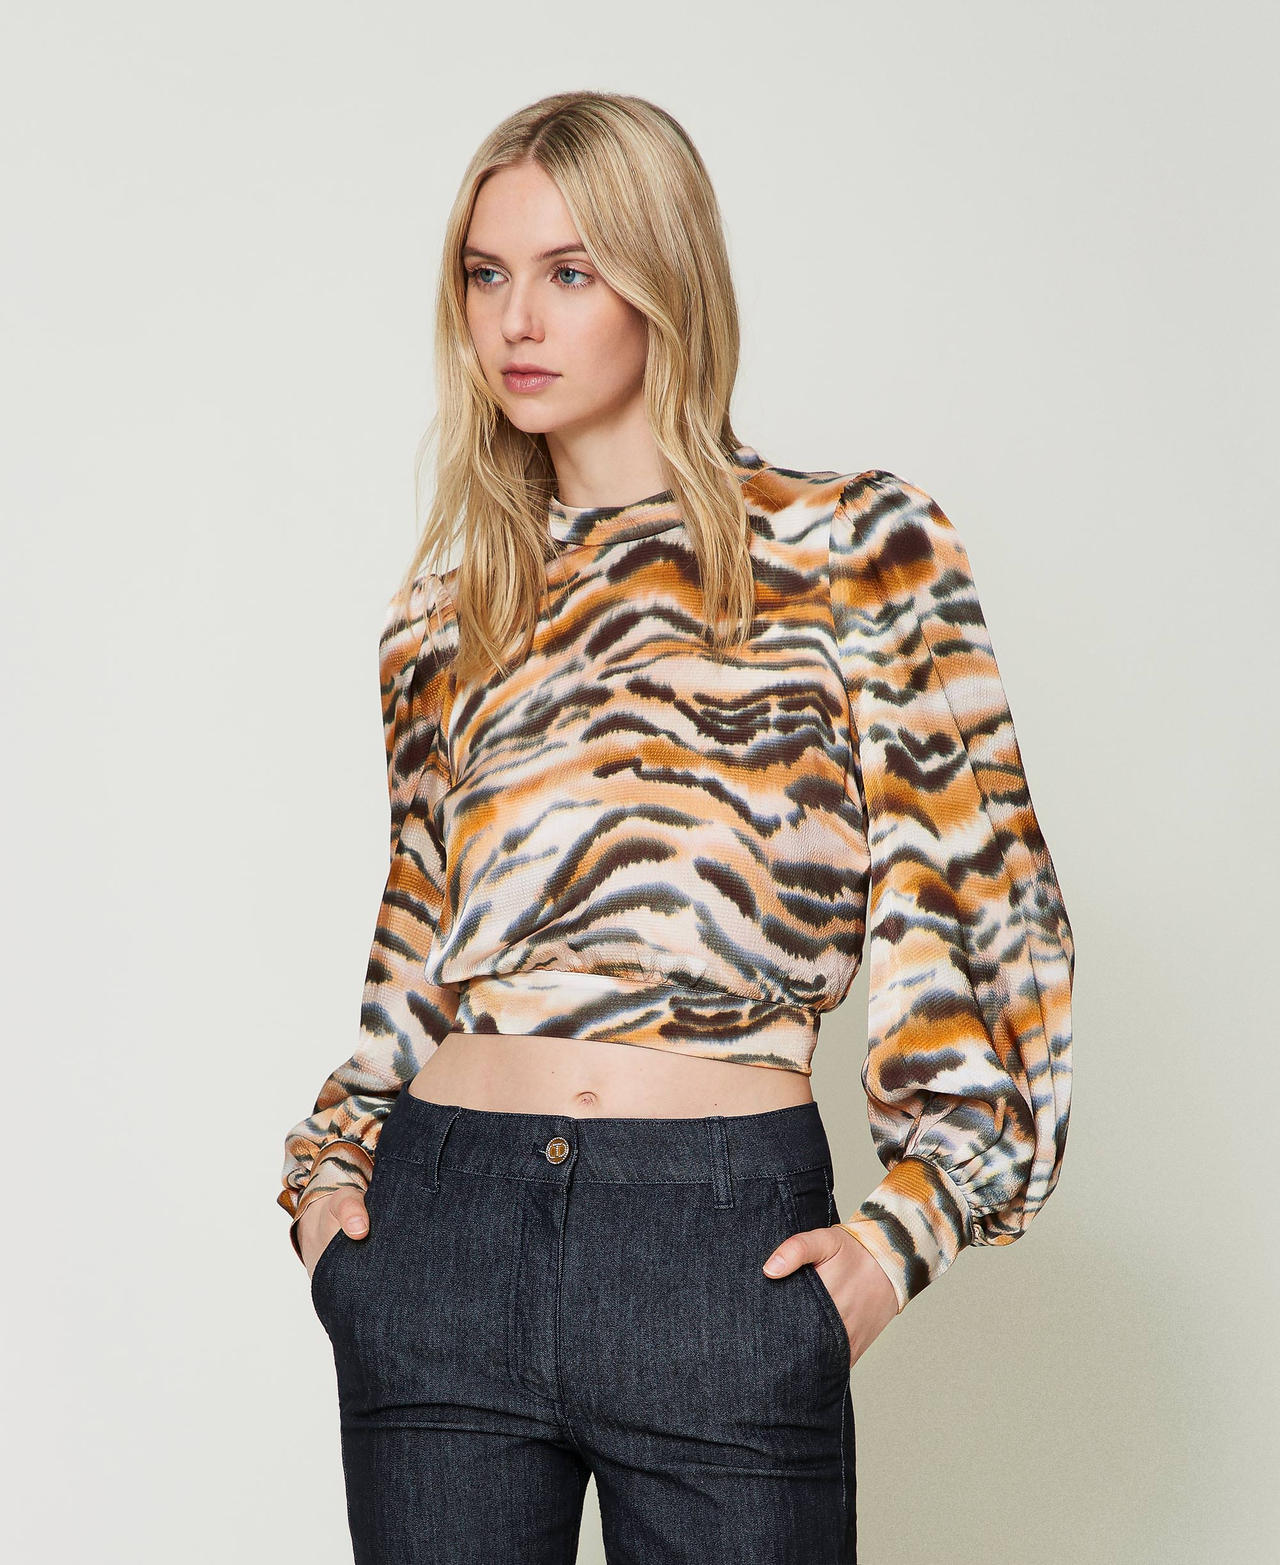 Cropped animal print satin blouse Tennè Orange / Black Tiger Print Woman 242TP2654-02